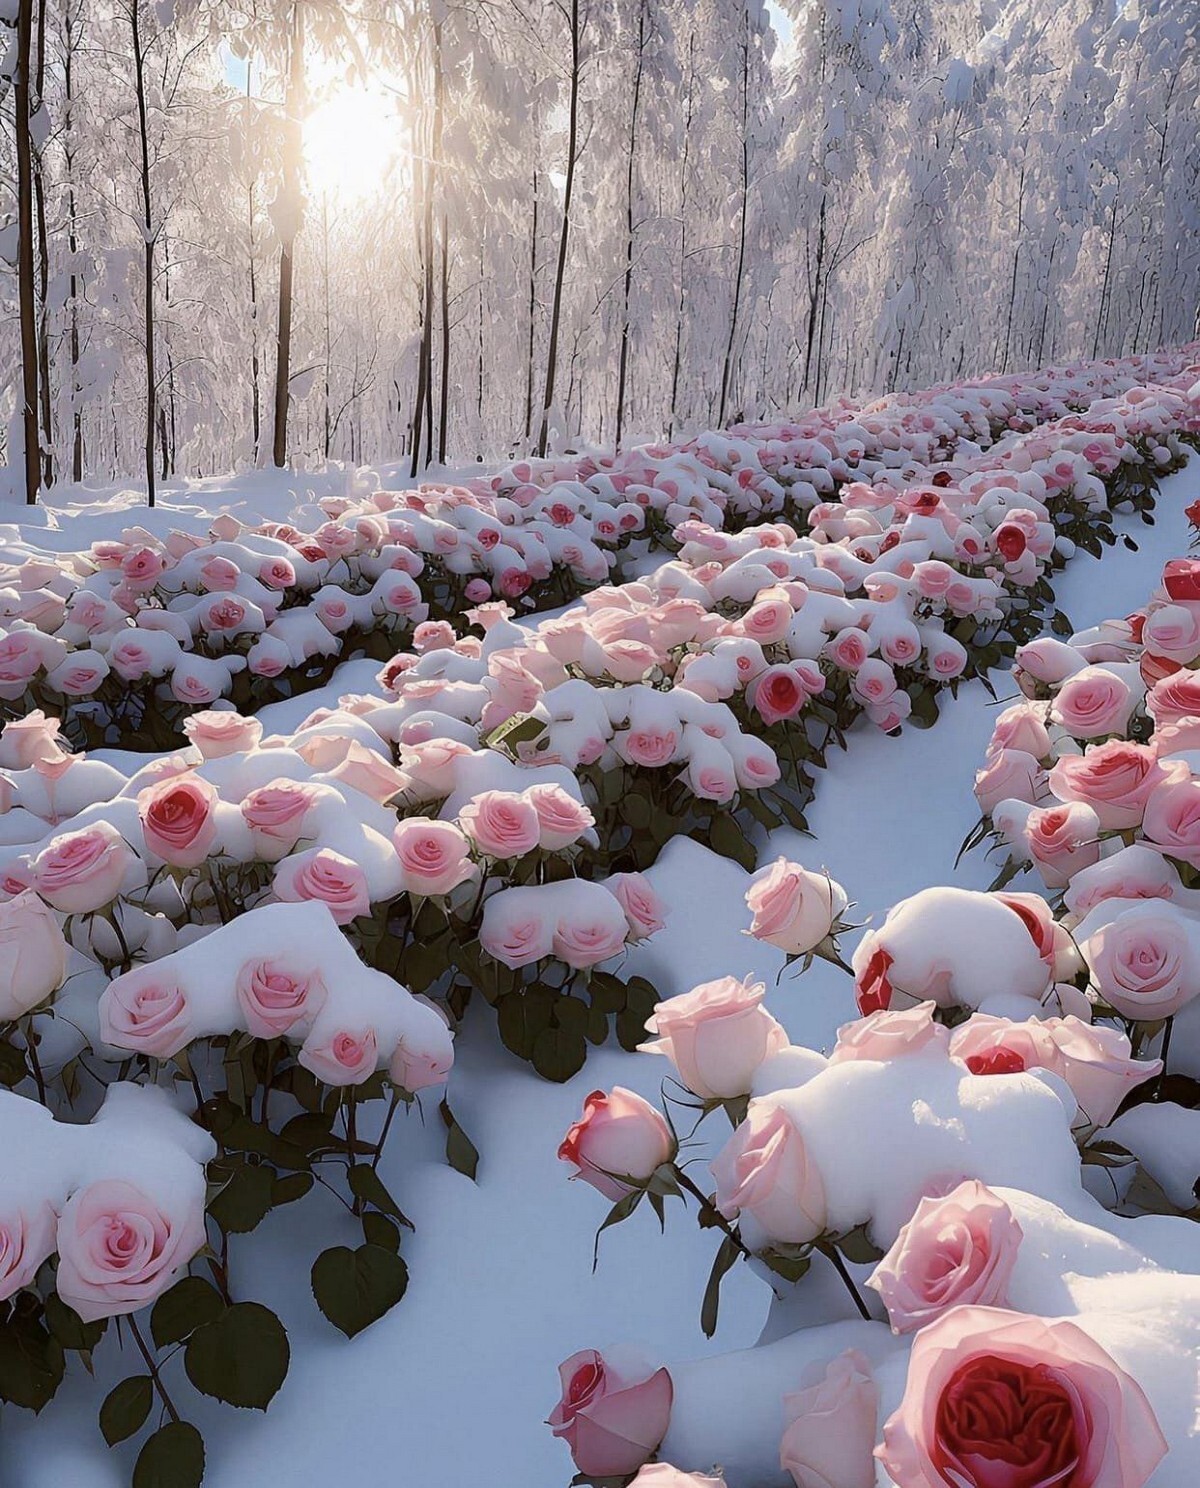 تصویر جالبی از گل های رز زیر برف